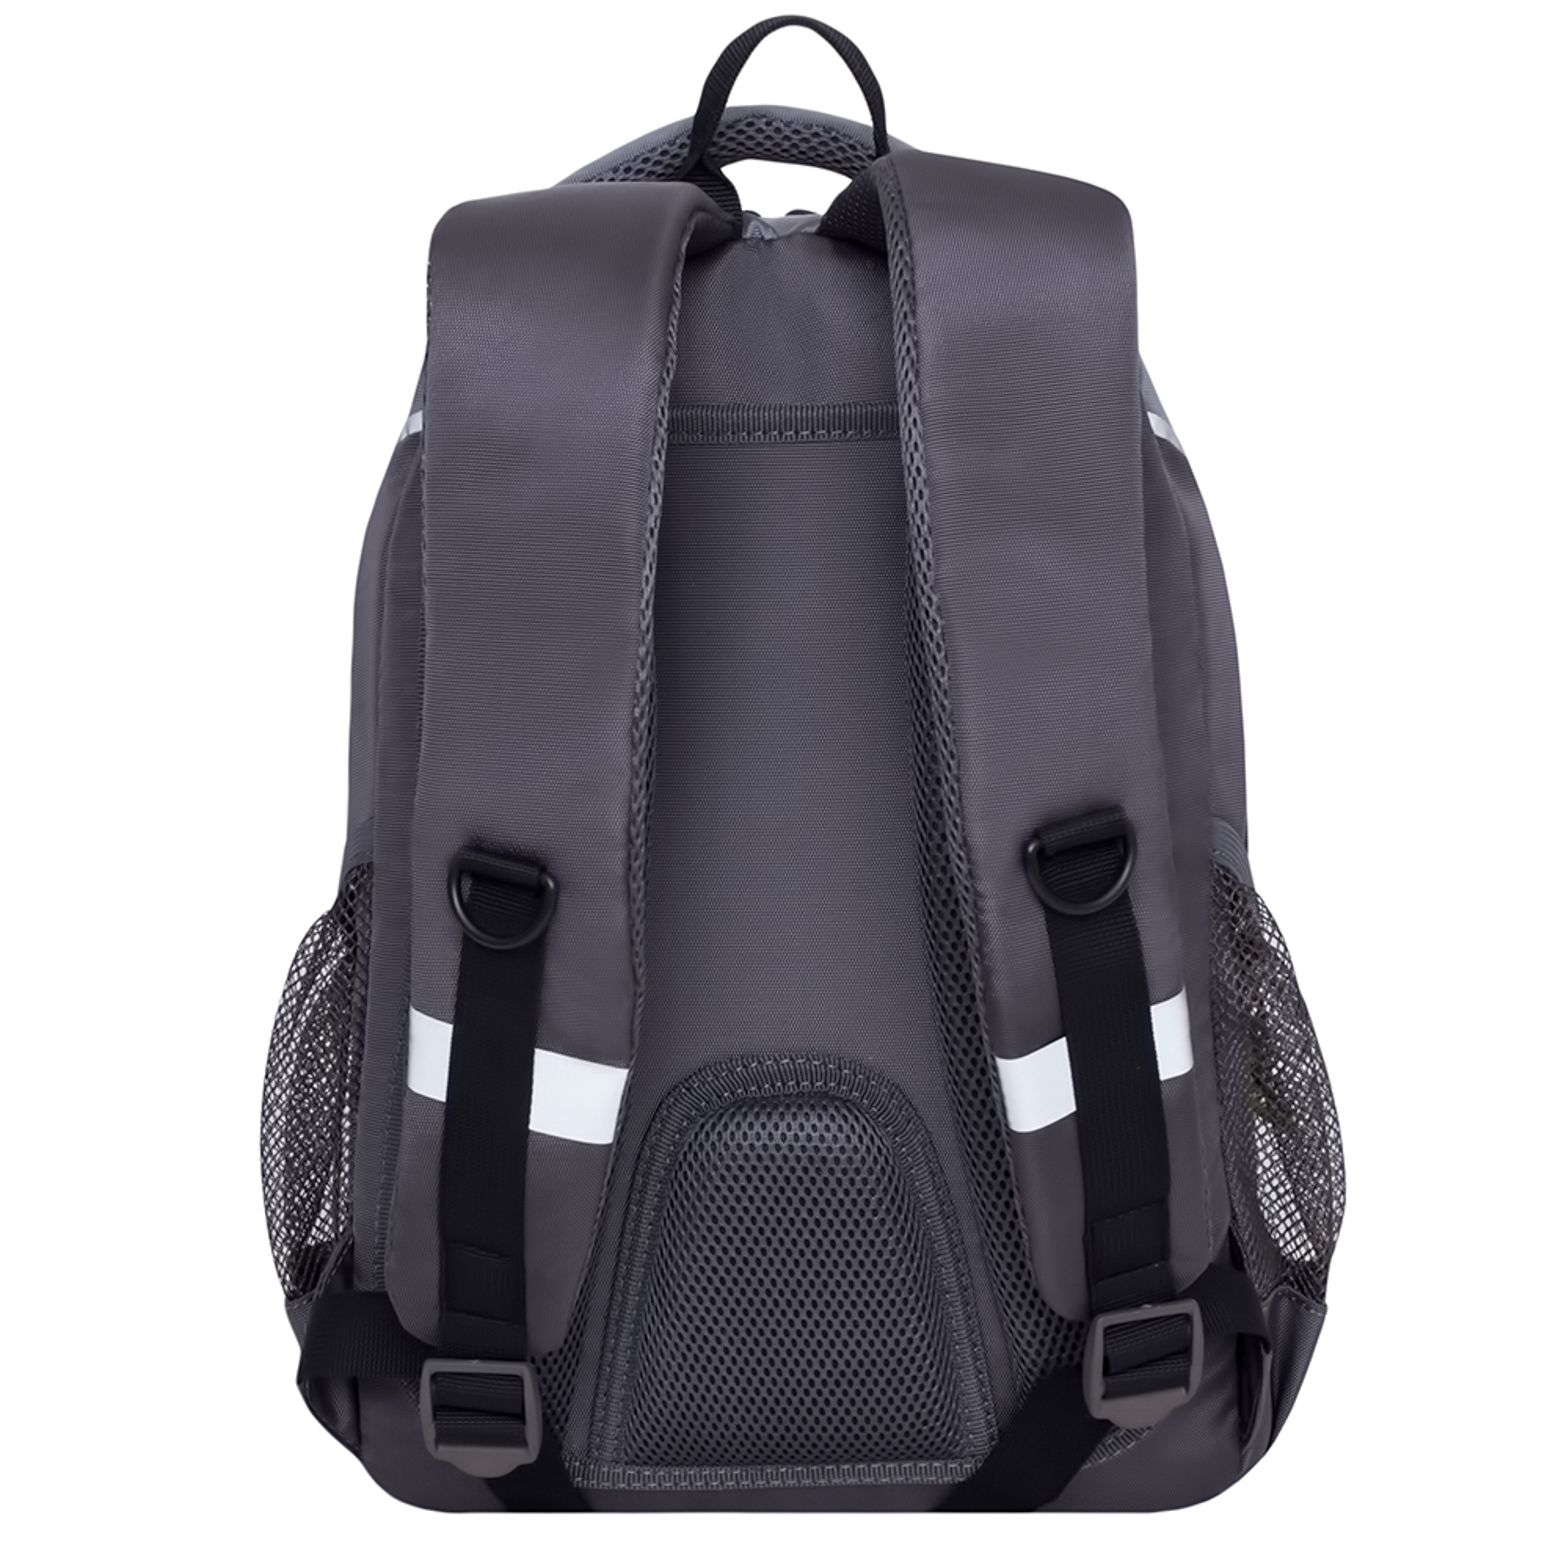 Рюкзак школьный Grizzly Серый-Темно-серый RB-963-1/3 - фото 3